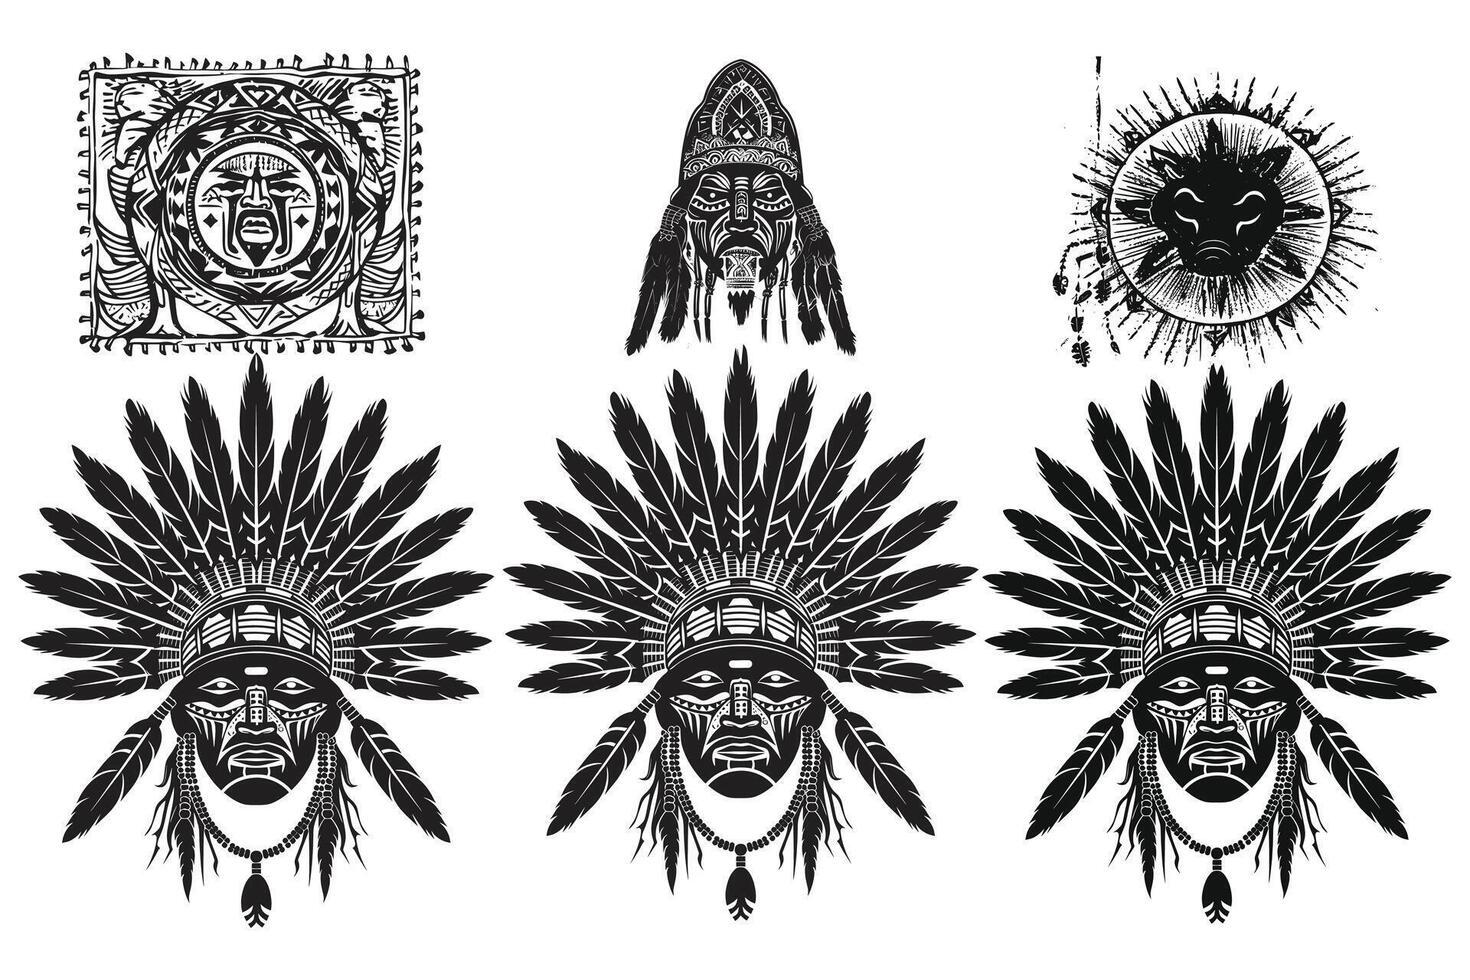 nativo americano enfeite tribal tatuagem Preto silhueta, americano indiano tatuagem tribal projeto, nativo americano tatuagem tribal mulher vetor